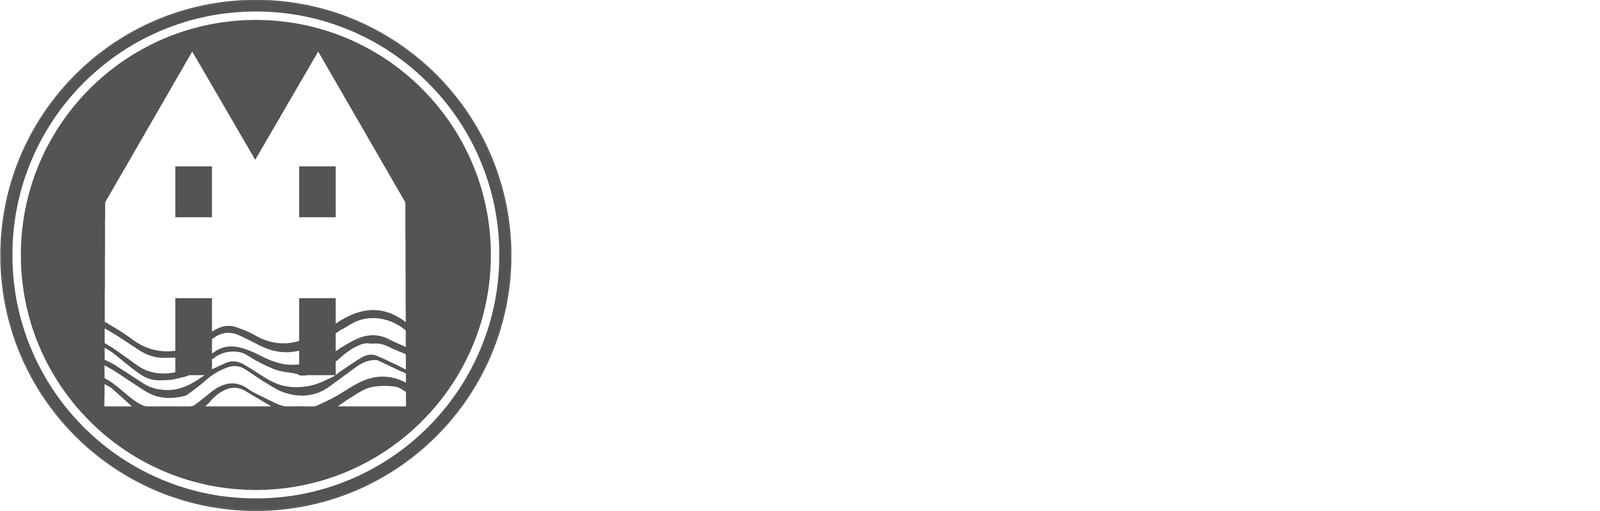 Tudor House Weymouth